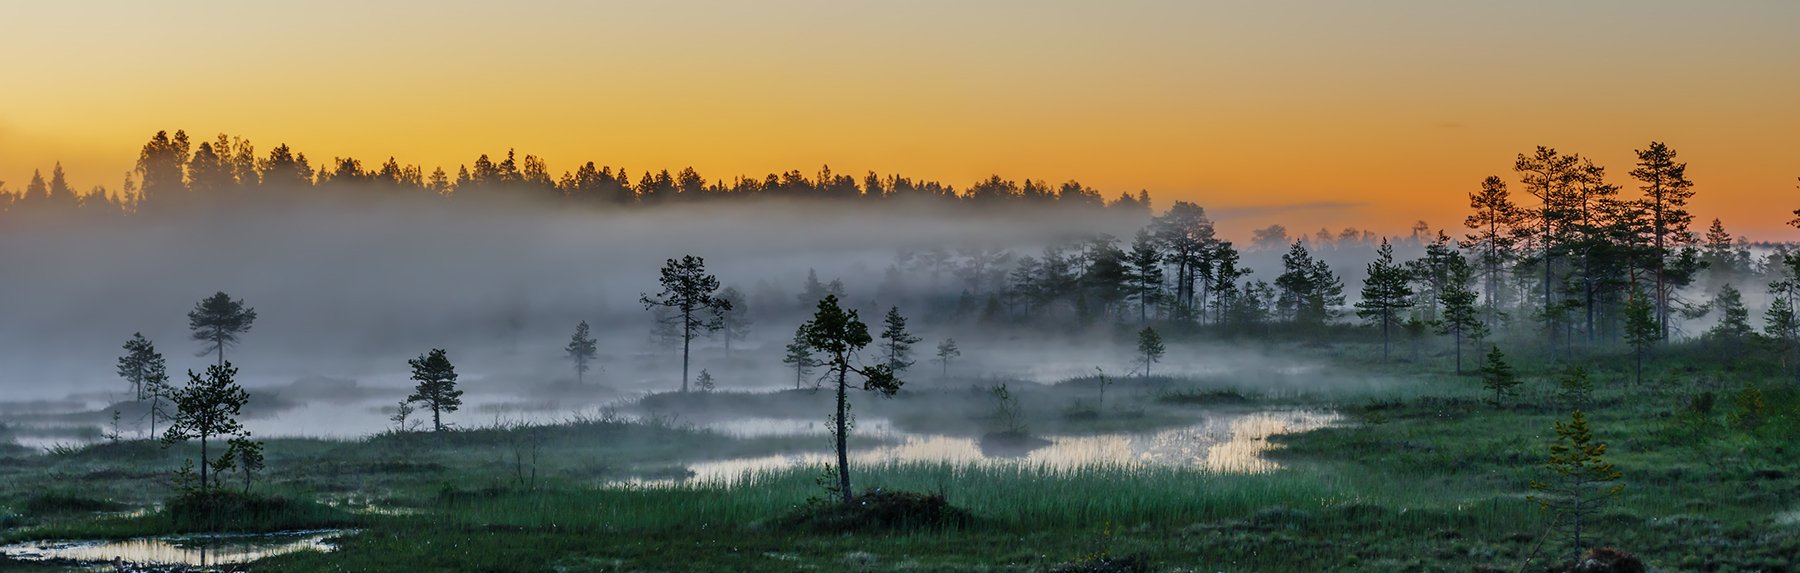 природа, пейзаж, карелия, панорама, утро, восход, рассвет, болото, туман,, Альберт Беляев